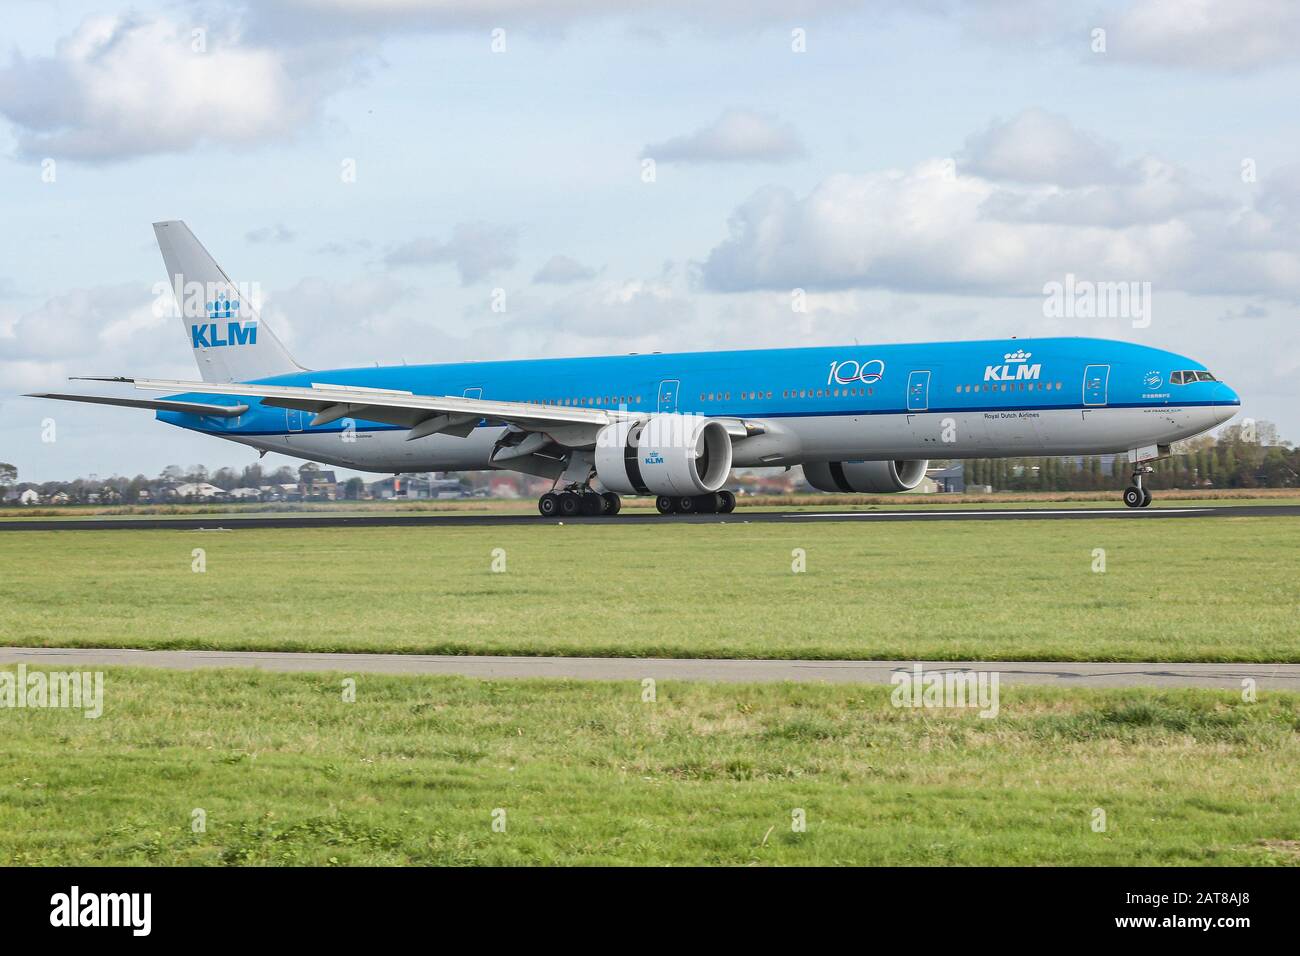 Un aeromobile a fusoliera larga KLM Royal Dutch Airlines Boeing 777-300 atterra all'aeroporto Schiphol di Amsterdam AMS EHAM nei Paesi Bassi alla pista Polderbaan. L'aereo ha la certificazione ETOPS per i voli transatlantici. Foto Stock